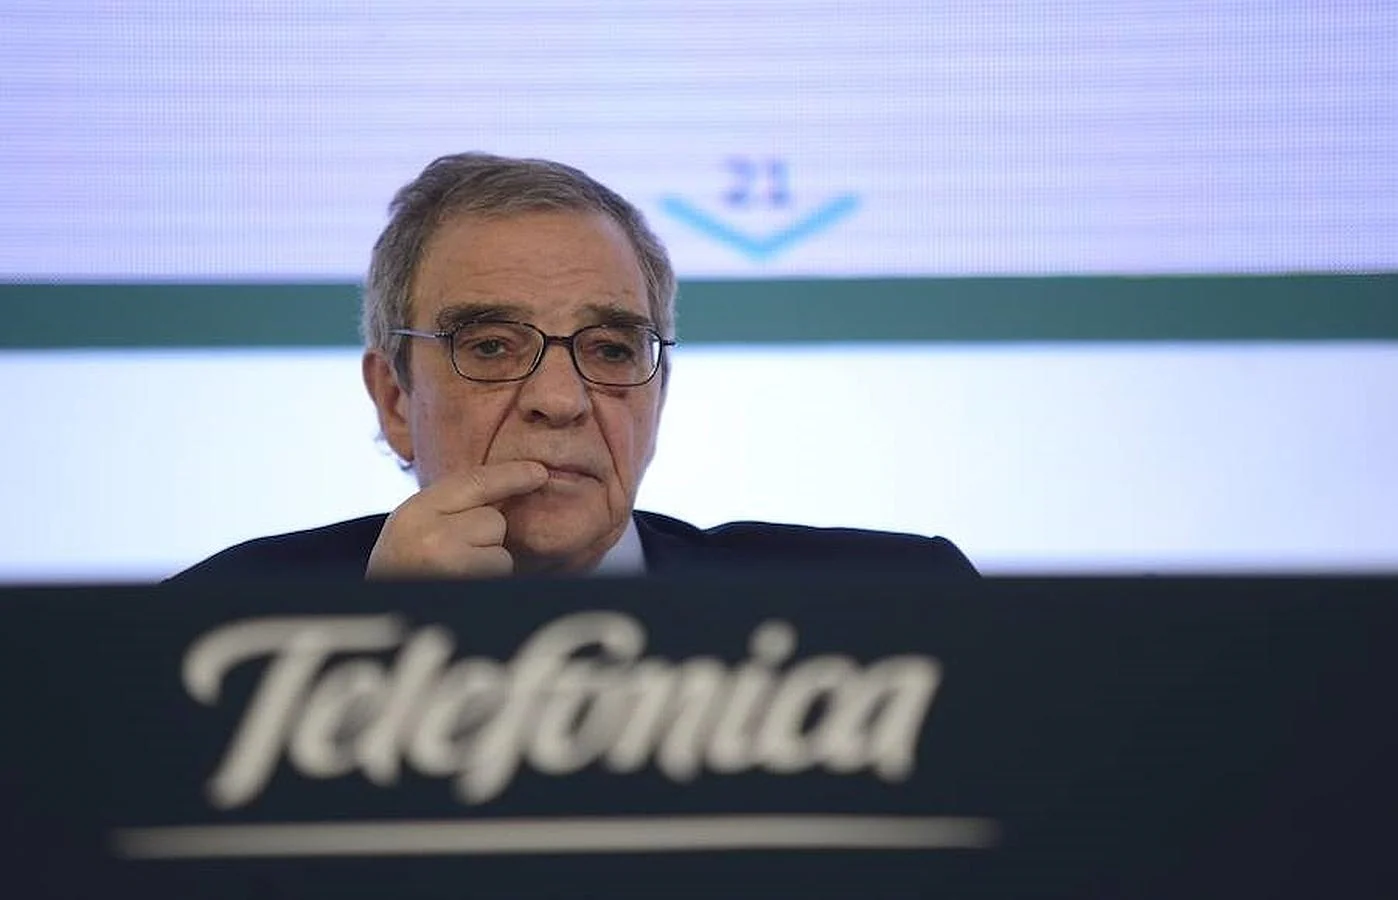 César alierta dimite como presidente de Telefónica